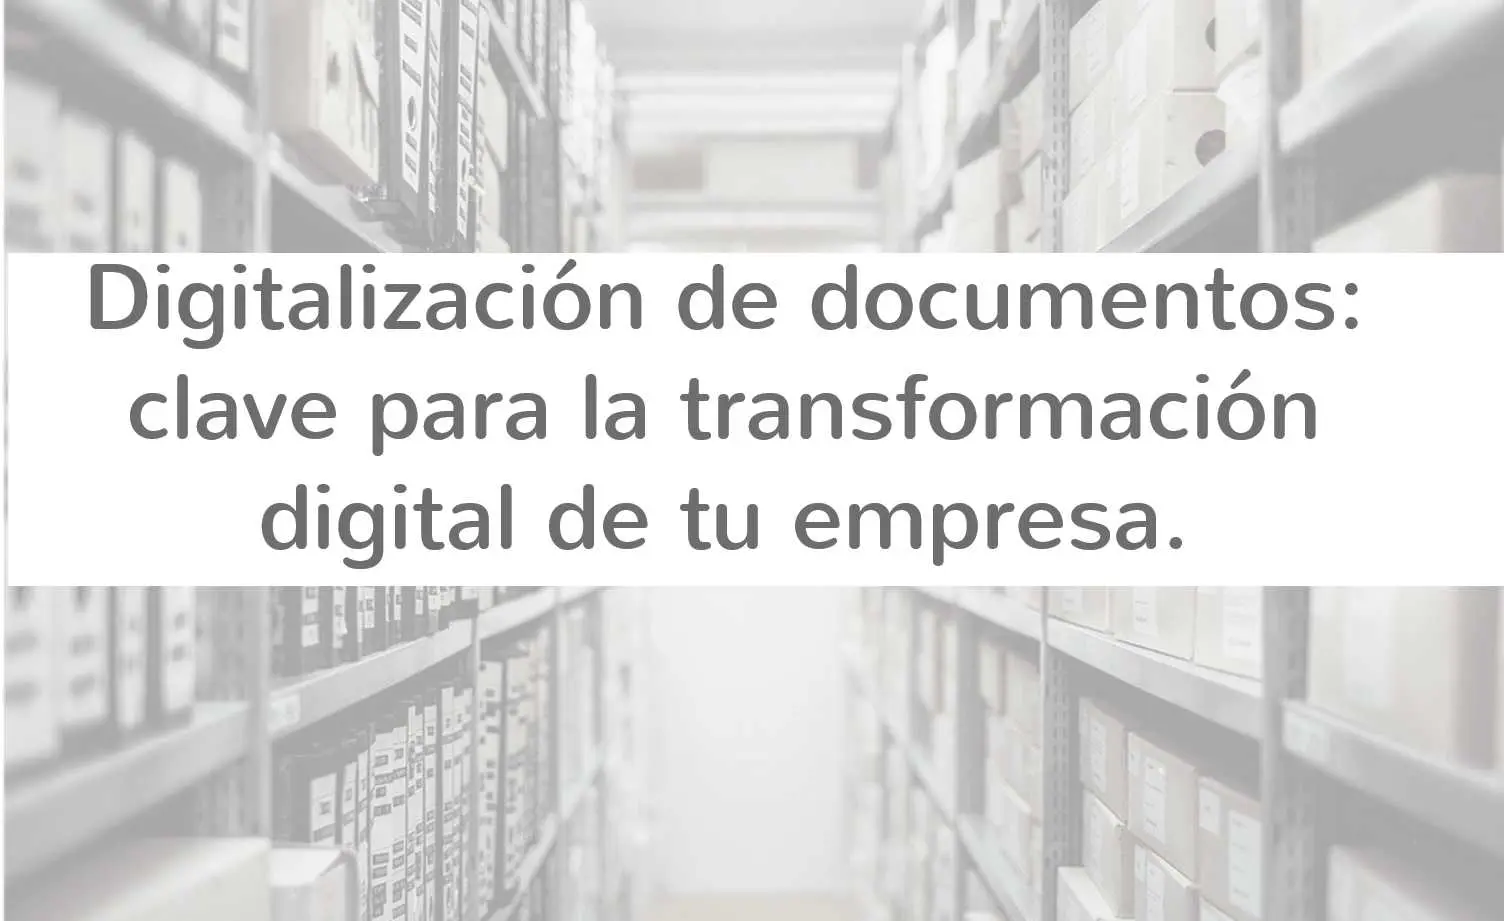 Digitalización de documentos: clave para la transformación digital de tu empresa